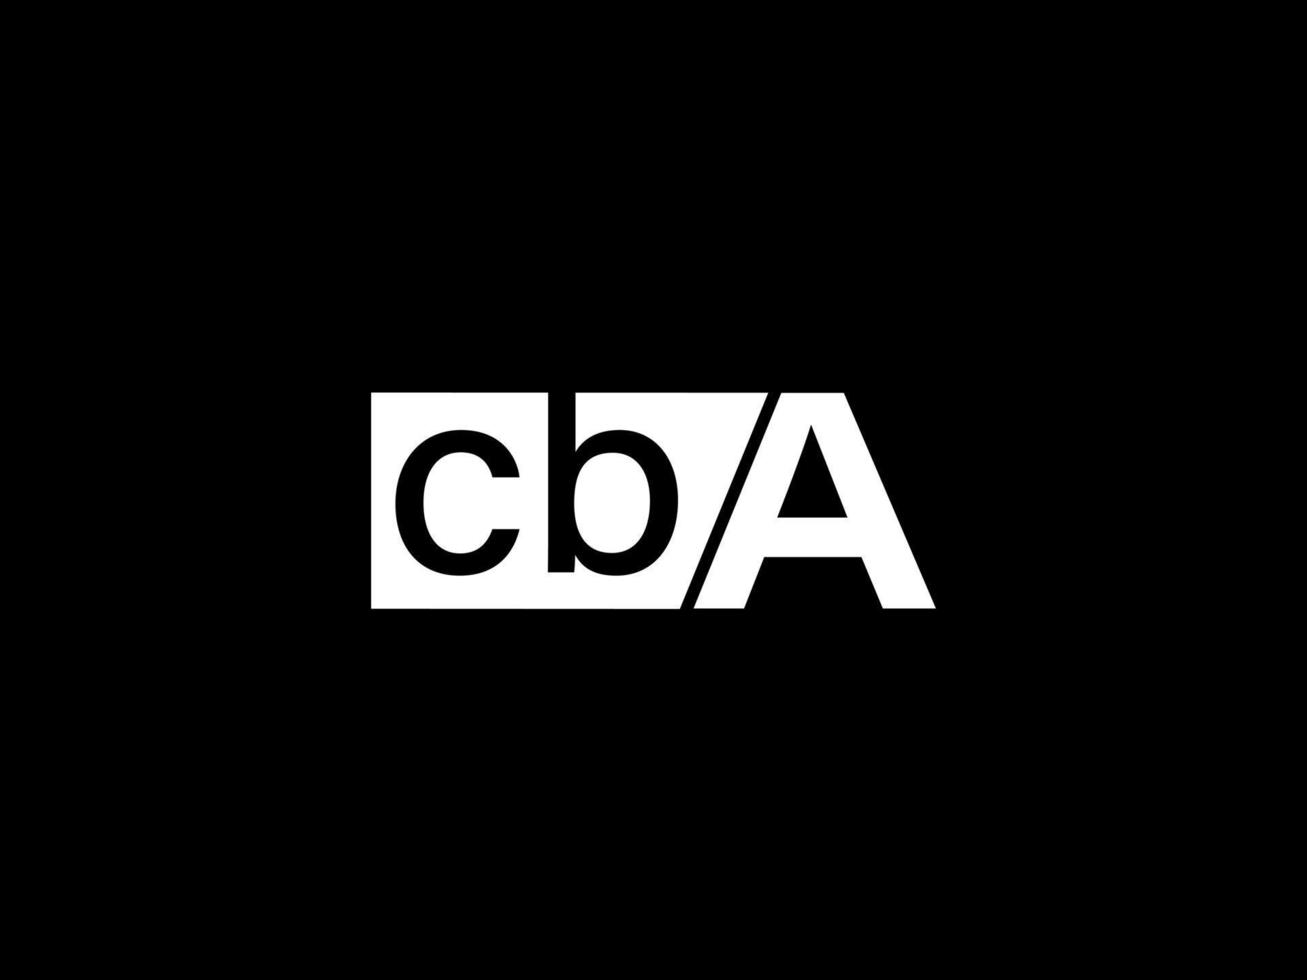 cba logotyp och grafik design vektor konst, ikoner isolerat på svart bakgrund